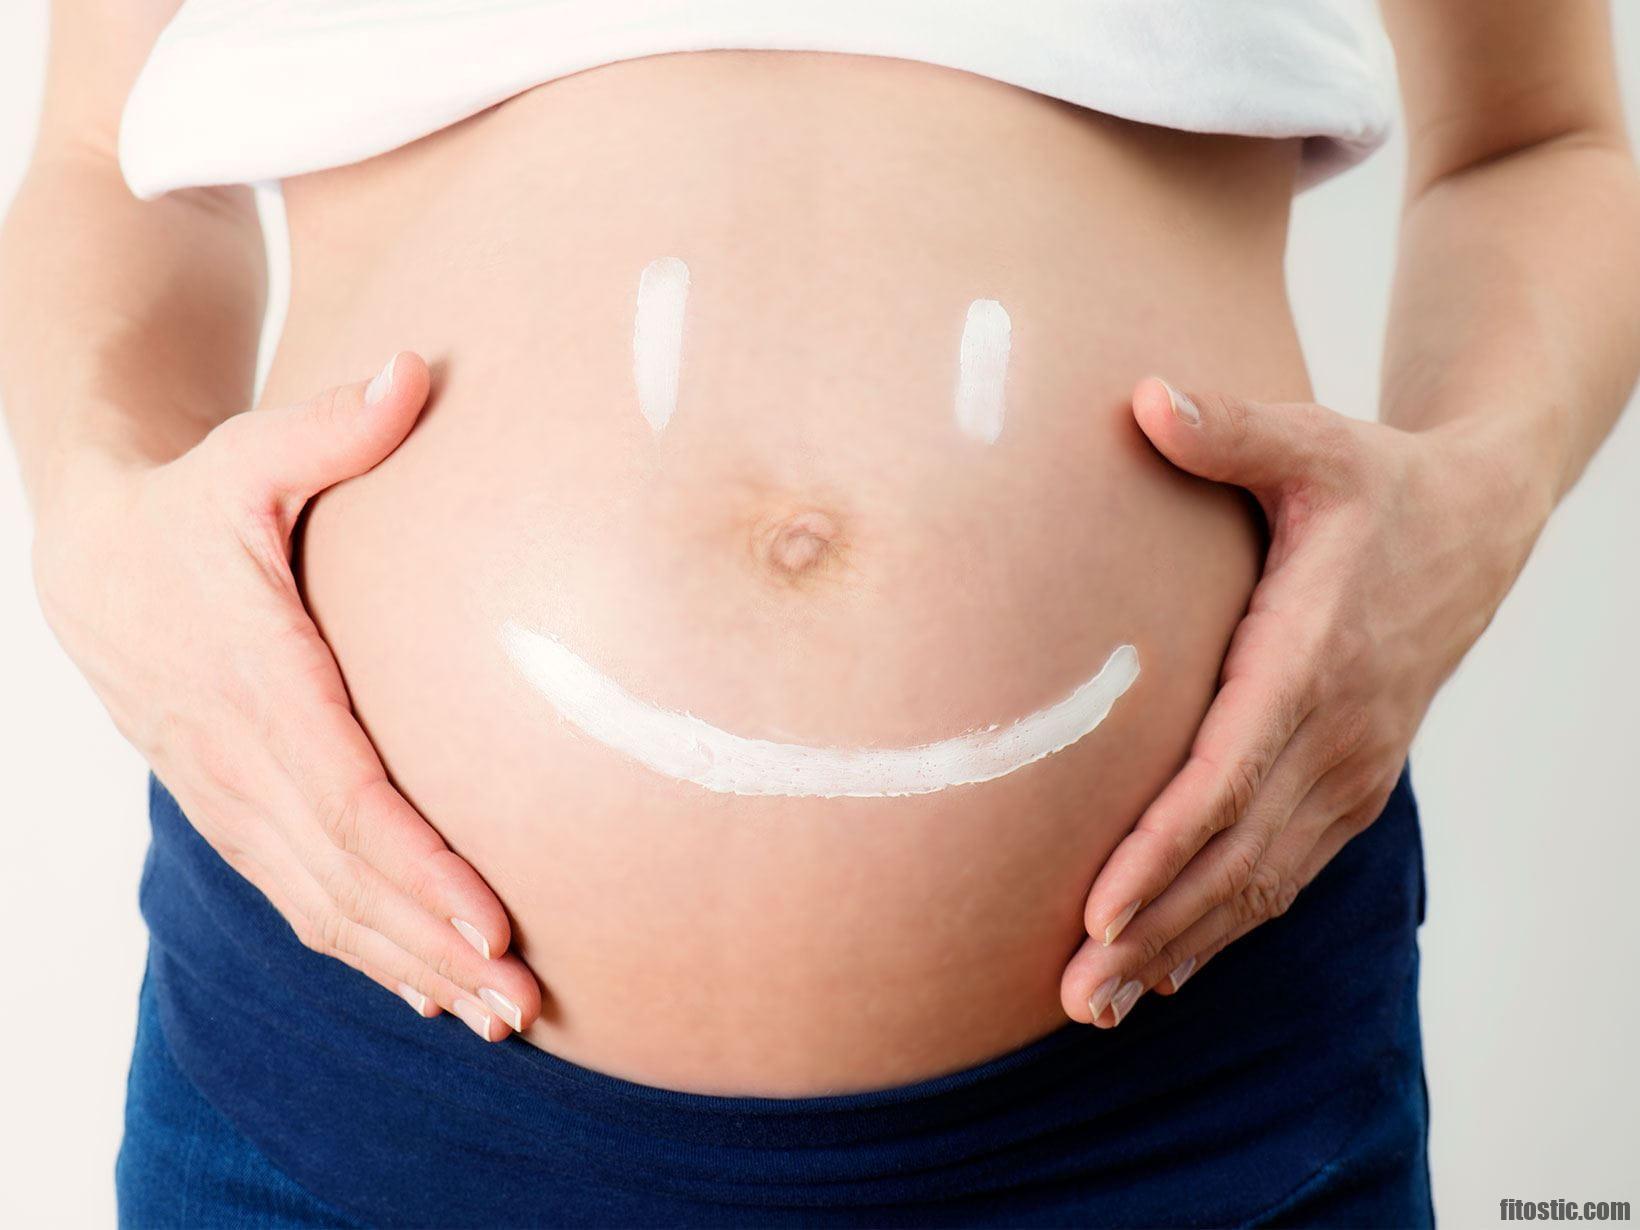 La chirurgia plastica durante la gravidanza è sicura? Tunisie